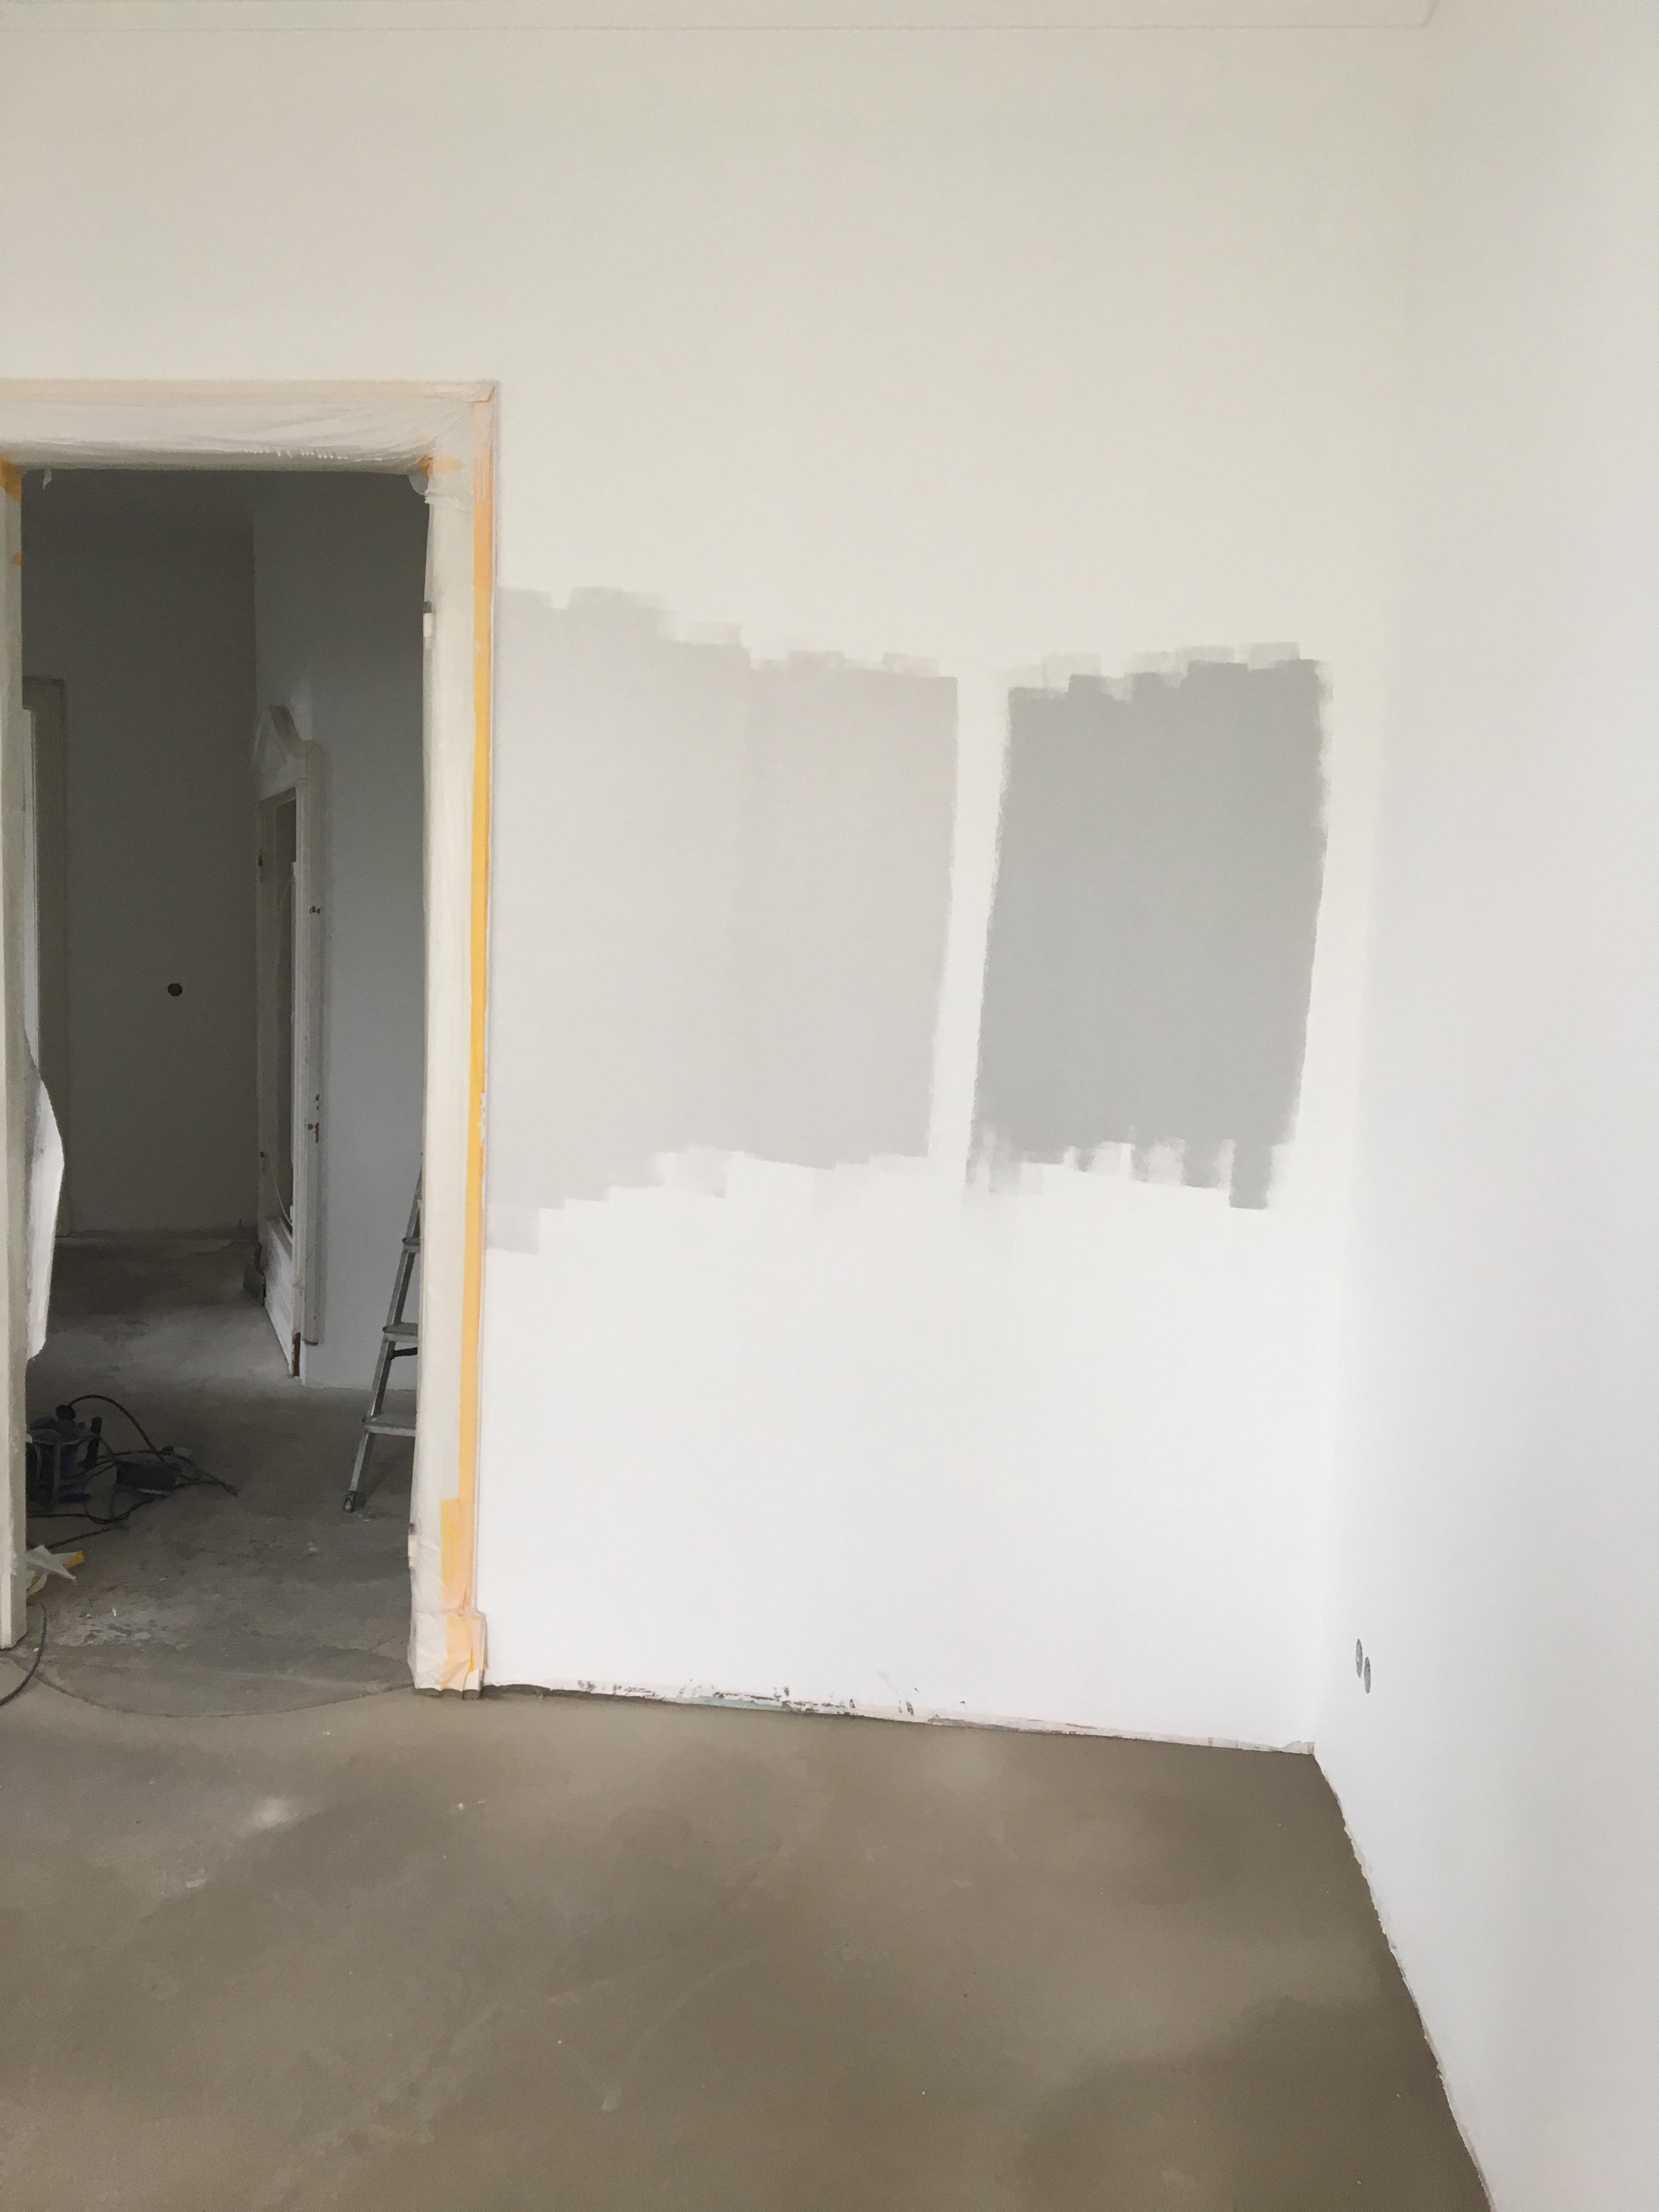 Wir haben gestern Probe gestrichen - der linke Grau-Ton wird es. Und zwar für alle Räume, bis auf das Kinderzimmer.